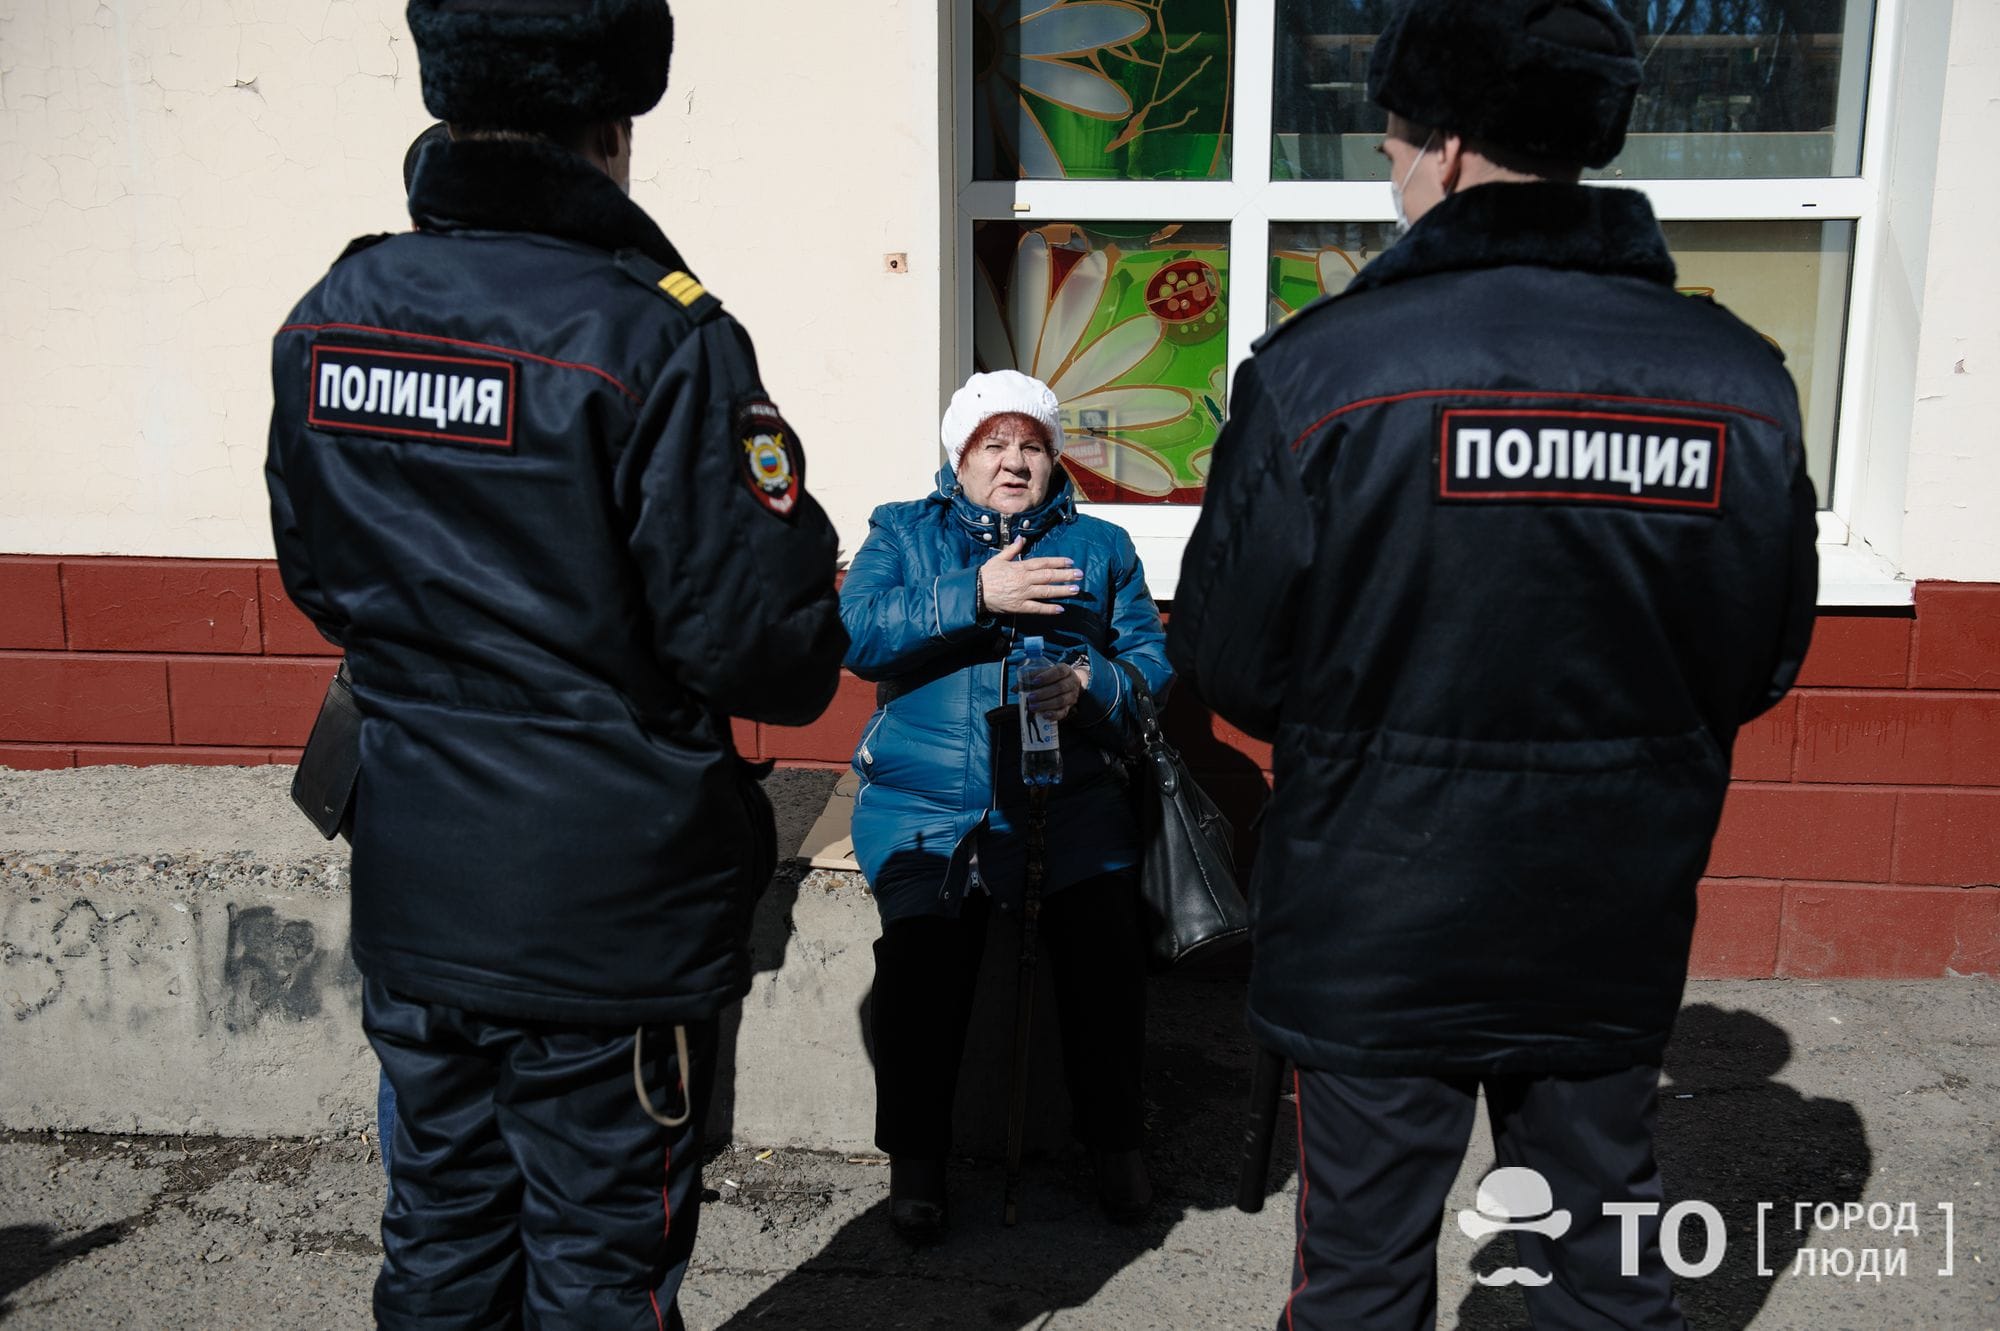 Коронавирус (Covid-19), Томские новости, магазины режим маски арестовали задержали сводка рейды проверки В выходные в Томске выявили более 60 нарушений масочного режима в супермаркетах